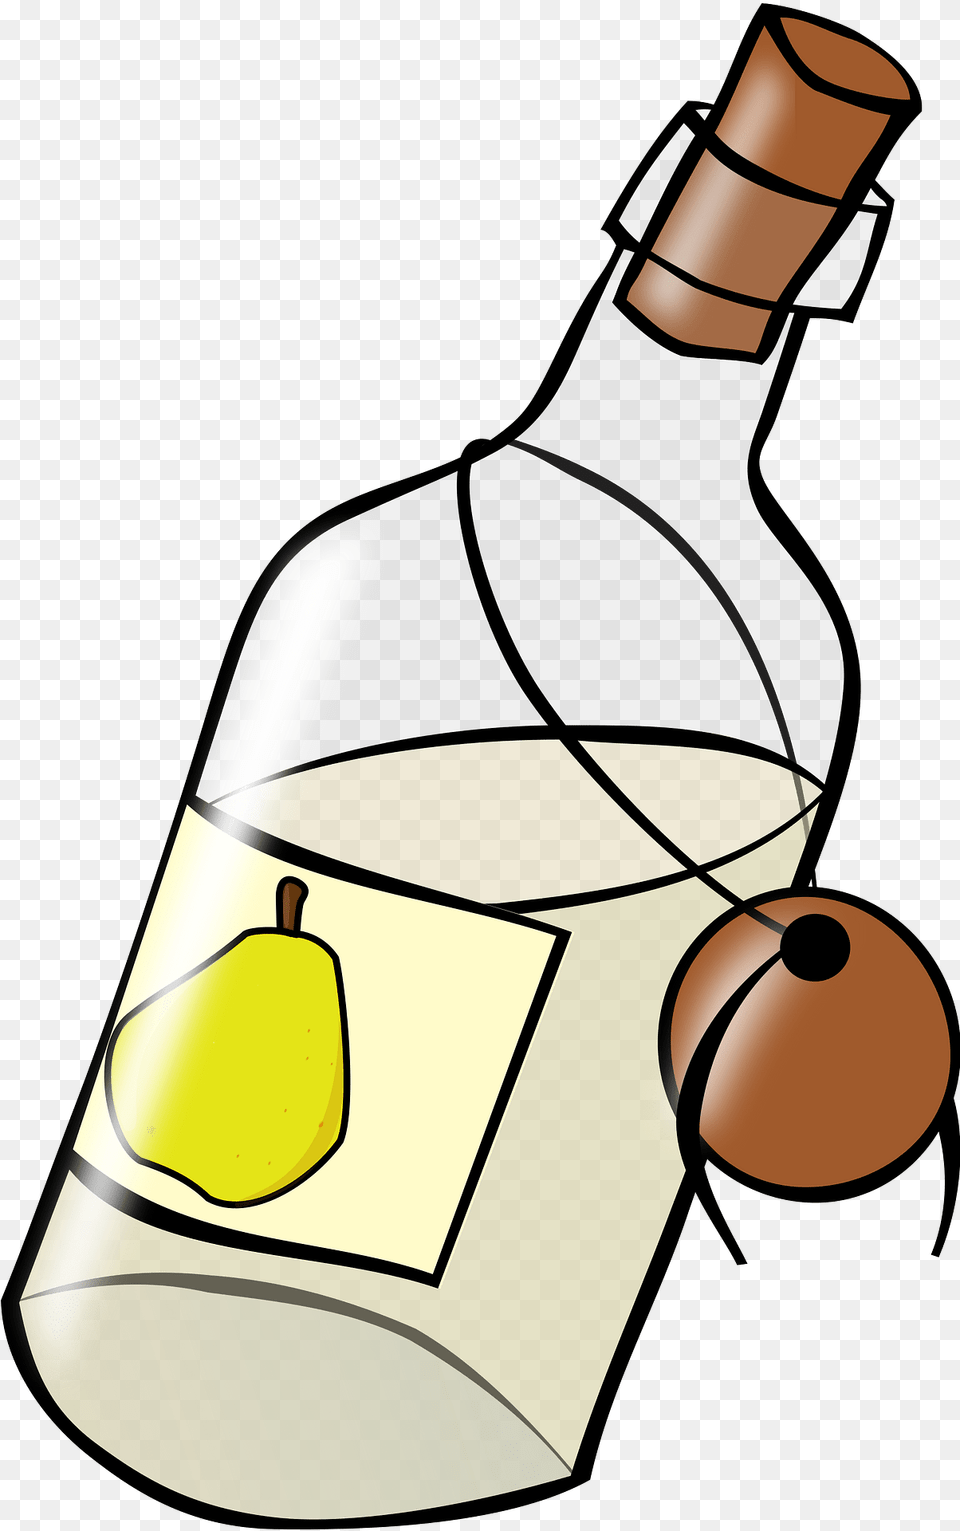 Bottle Clipart, Alcohol, Wine, Liquor, Wine Bottle Free Transparent Png